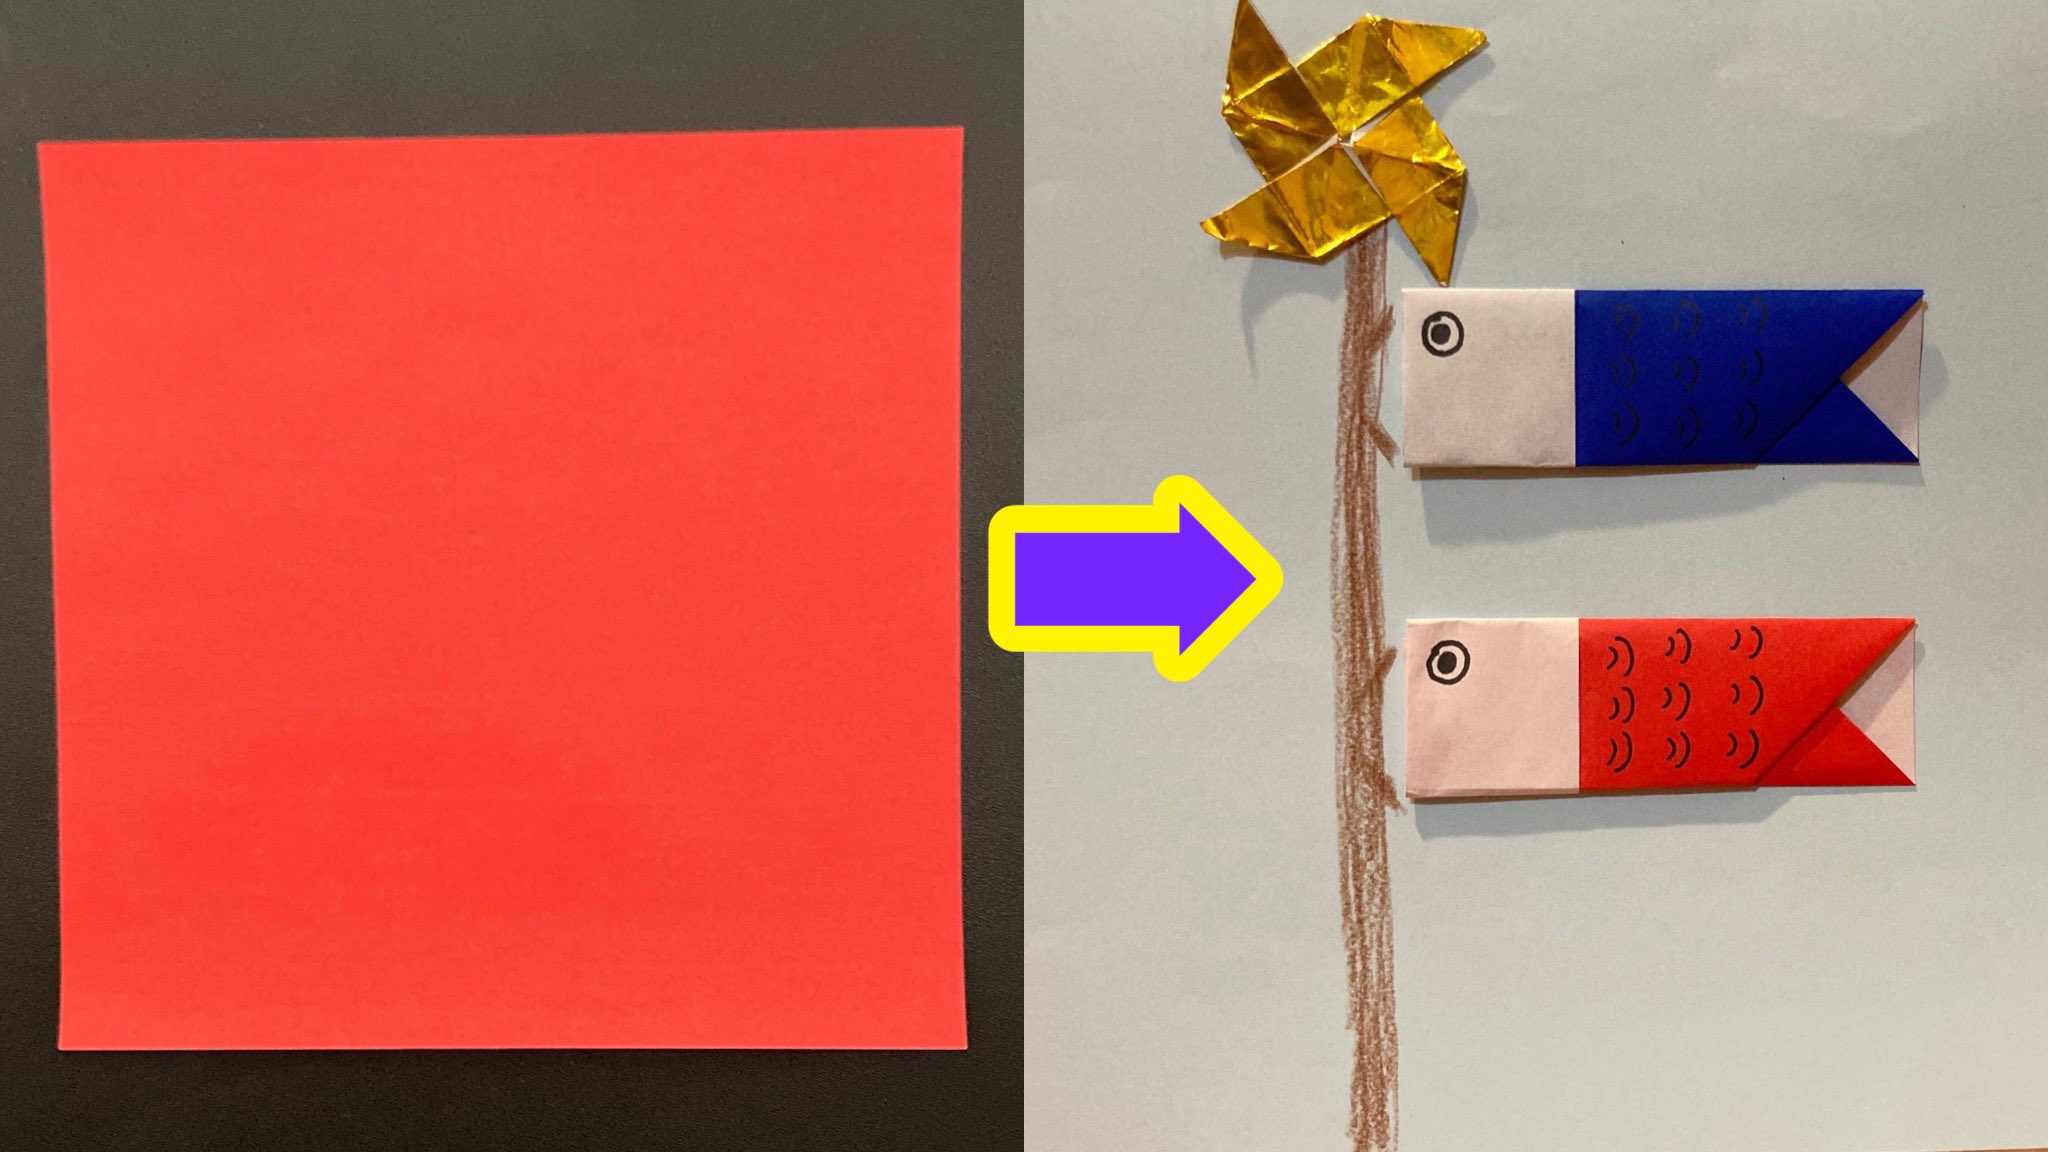 保育士の簡単子供向け 折り紙動画 Origami Japan 折り紙 保育士が教える簡単な こいのぼり の折り方 1分 1枚でできる Carp Streamer Origami 子供向け ミニチュア T Co 09giewnj0s 折り紙 子ども 折り紙作品 Origami こいのぼり